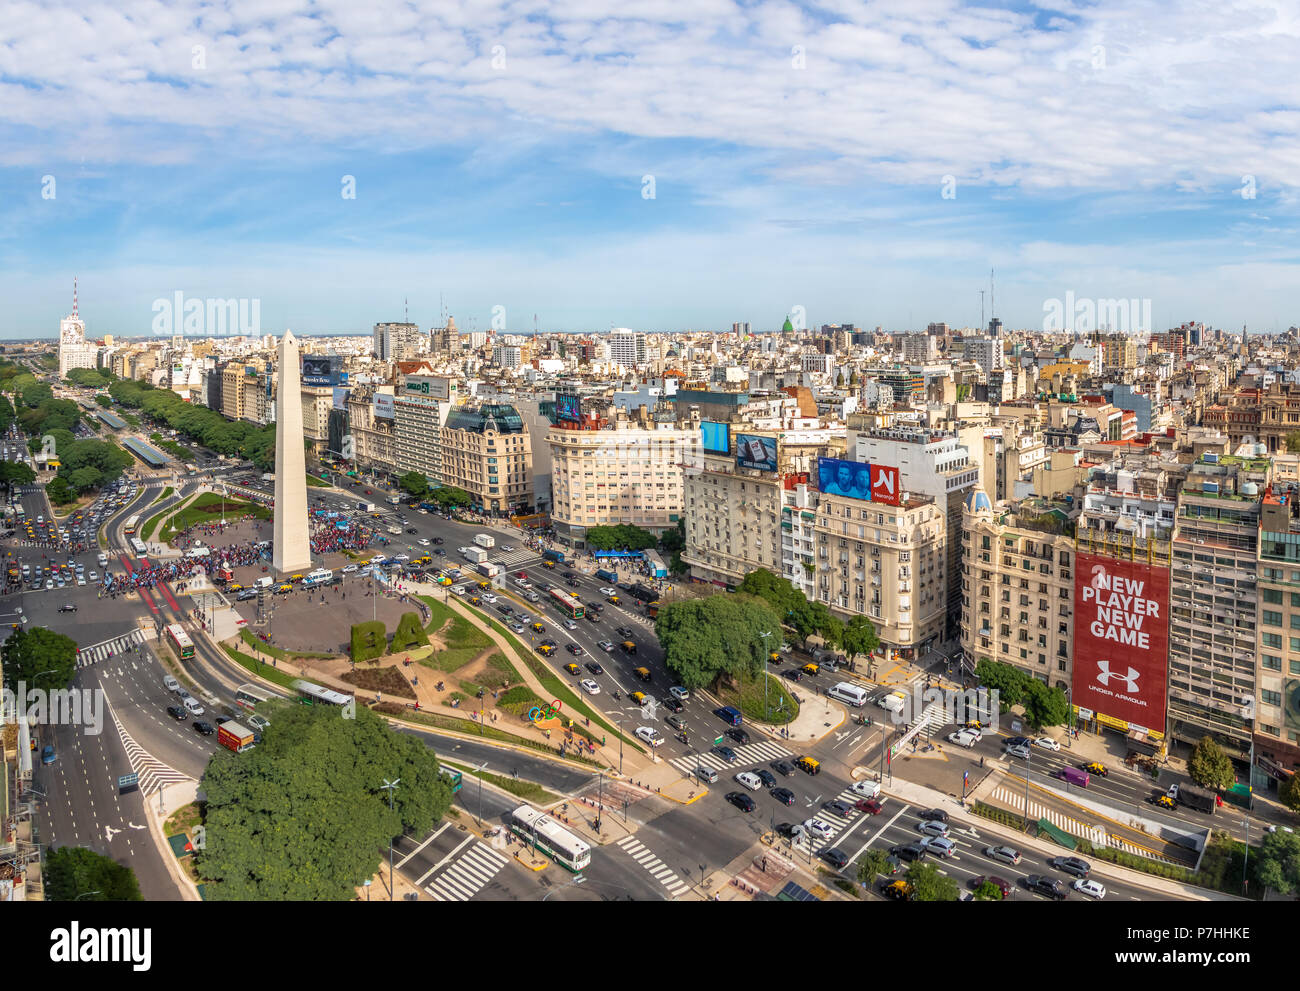 Vue aérienne de Buenos Aires et l'avenue 9 de julio - Buenos Aires, Argentine Banque D'Images